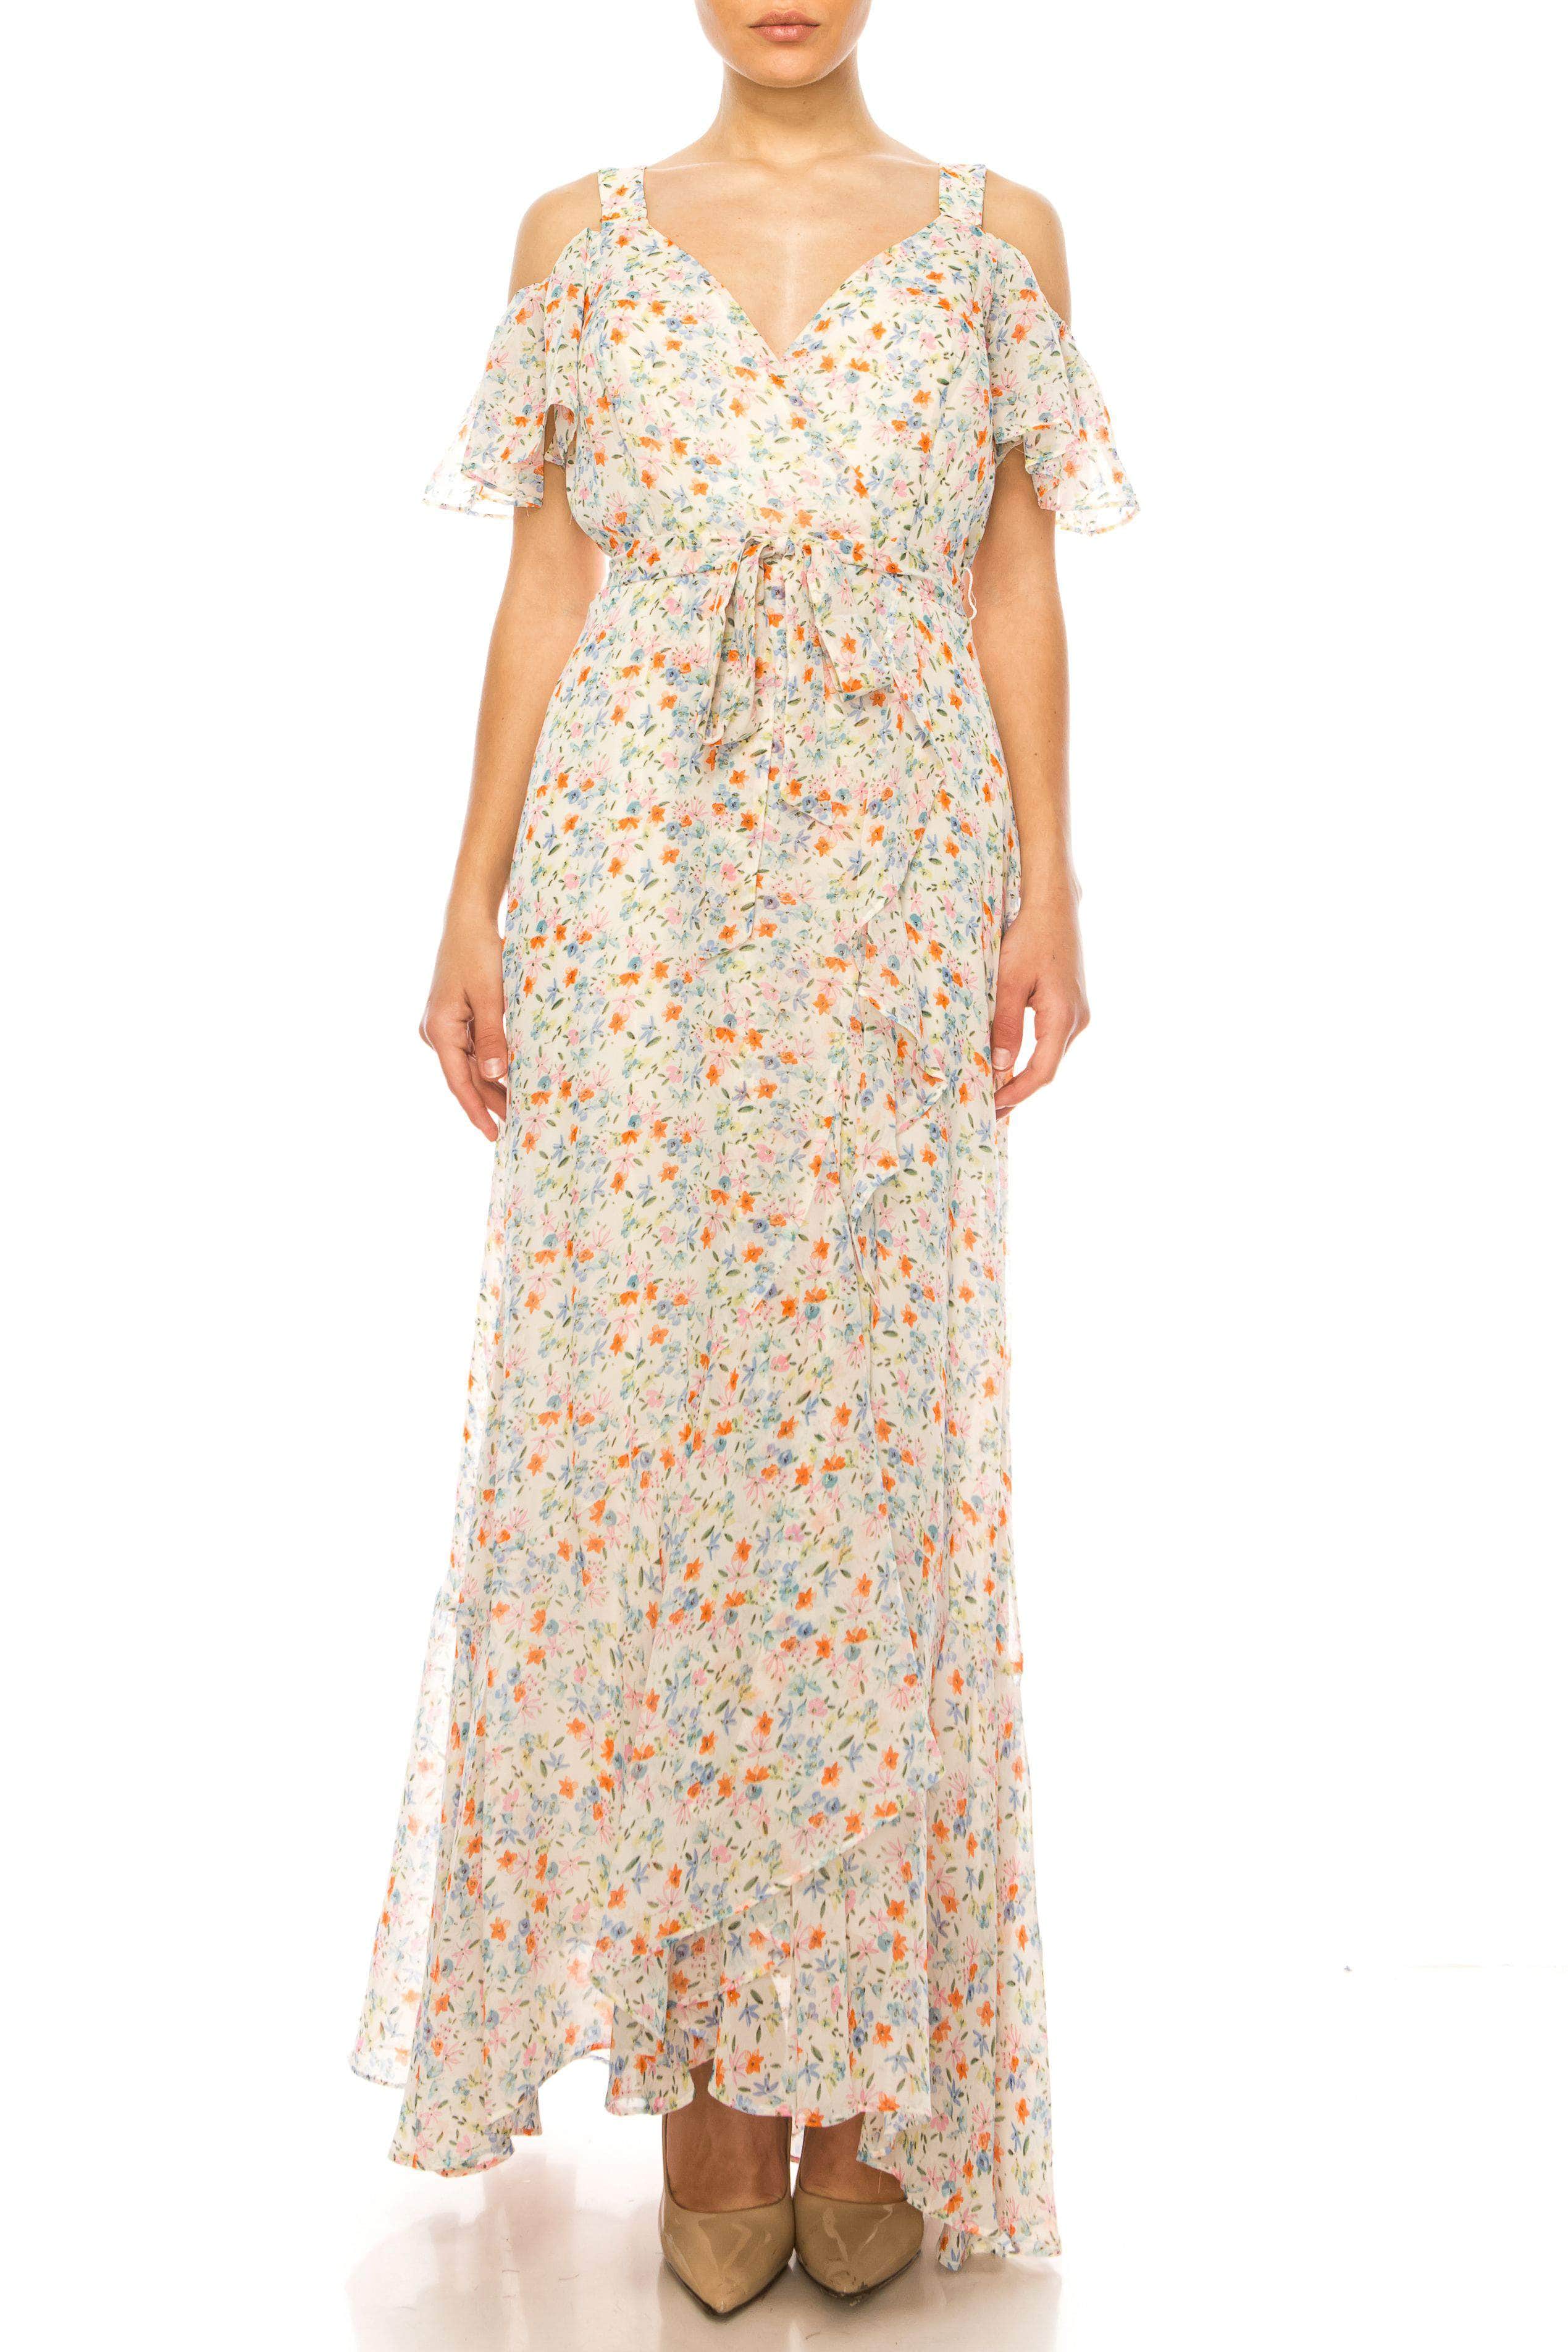 Maison Tara 92034M - Floral Cold Shoulder Dress
